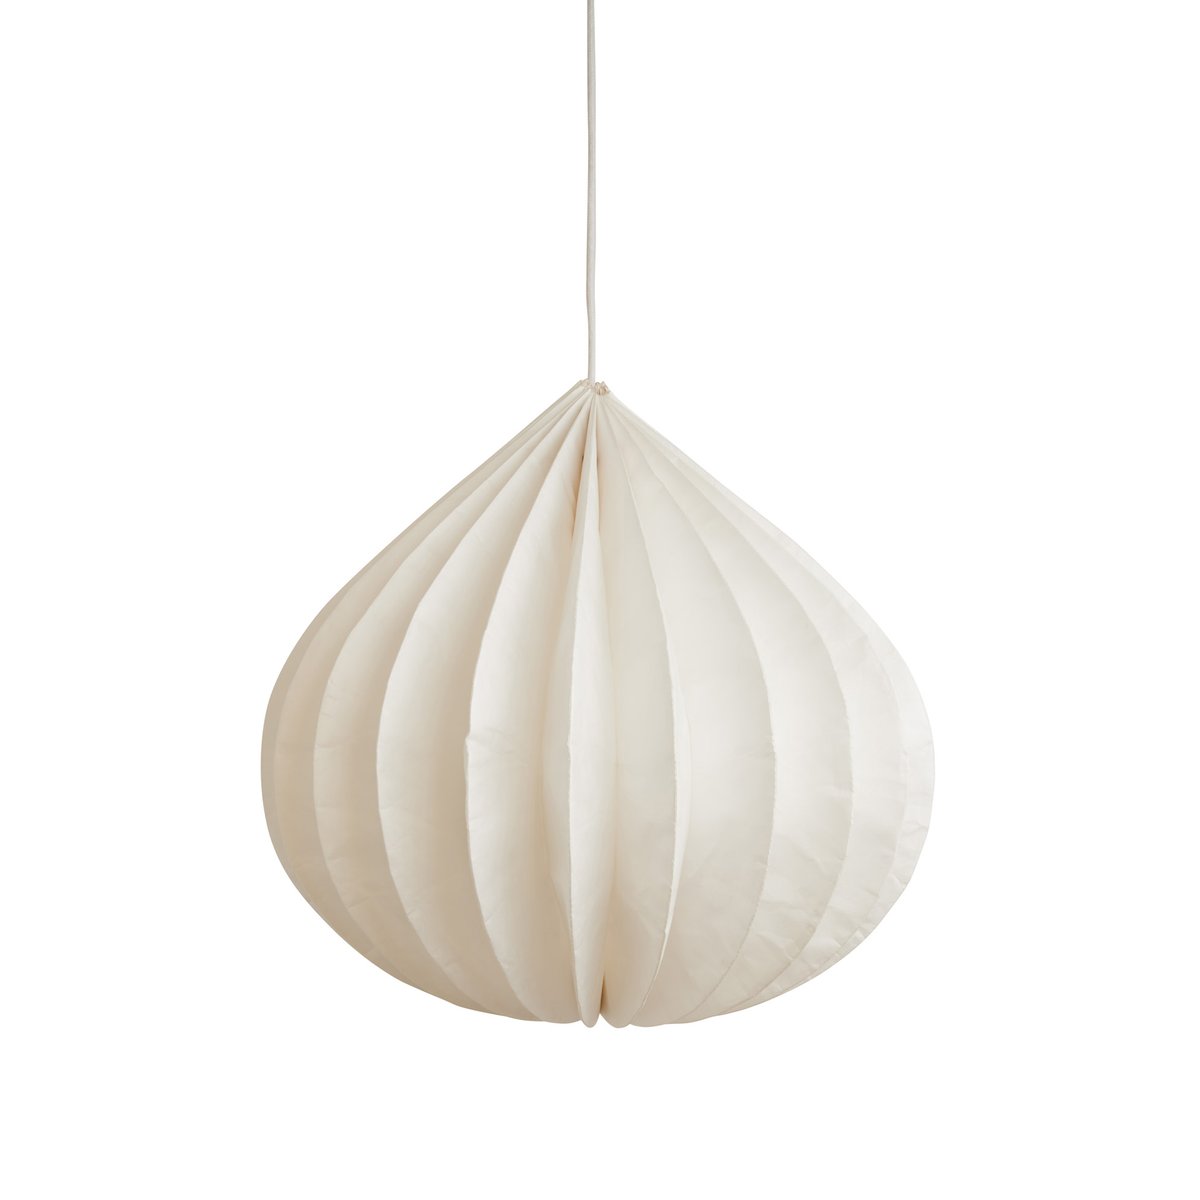 Watt & Veke Onion hanglamp White